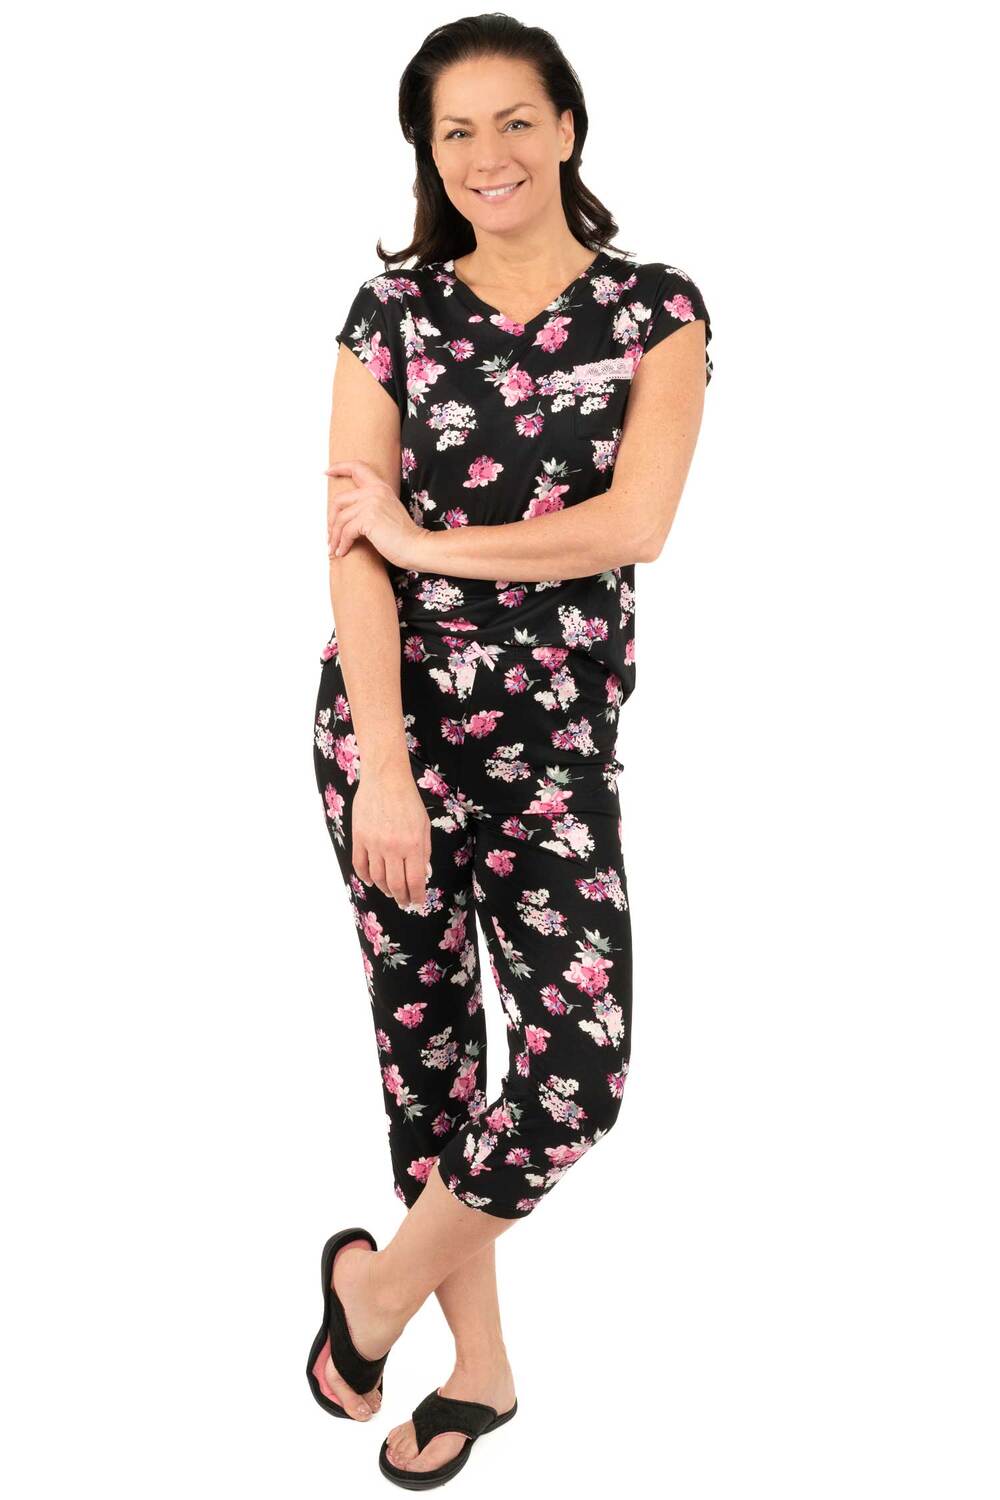 Charmour - Ensemble de pyjama capri avec poche poitrine bordée de dentelle - Rêves de fleurs